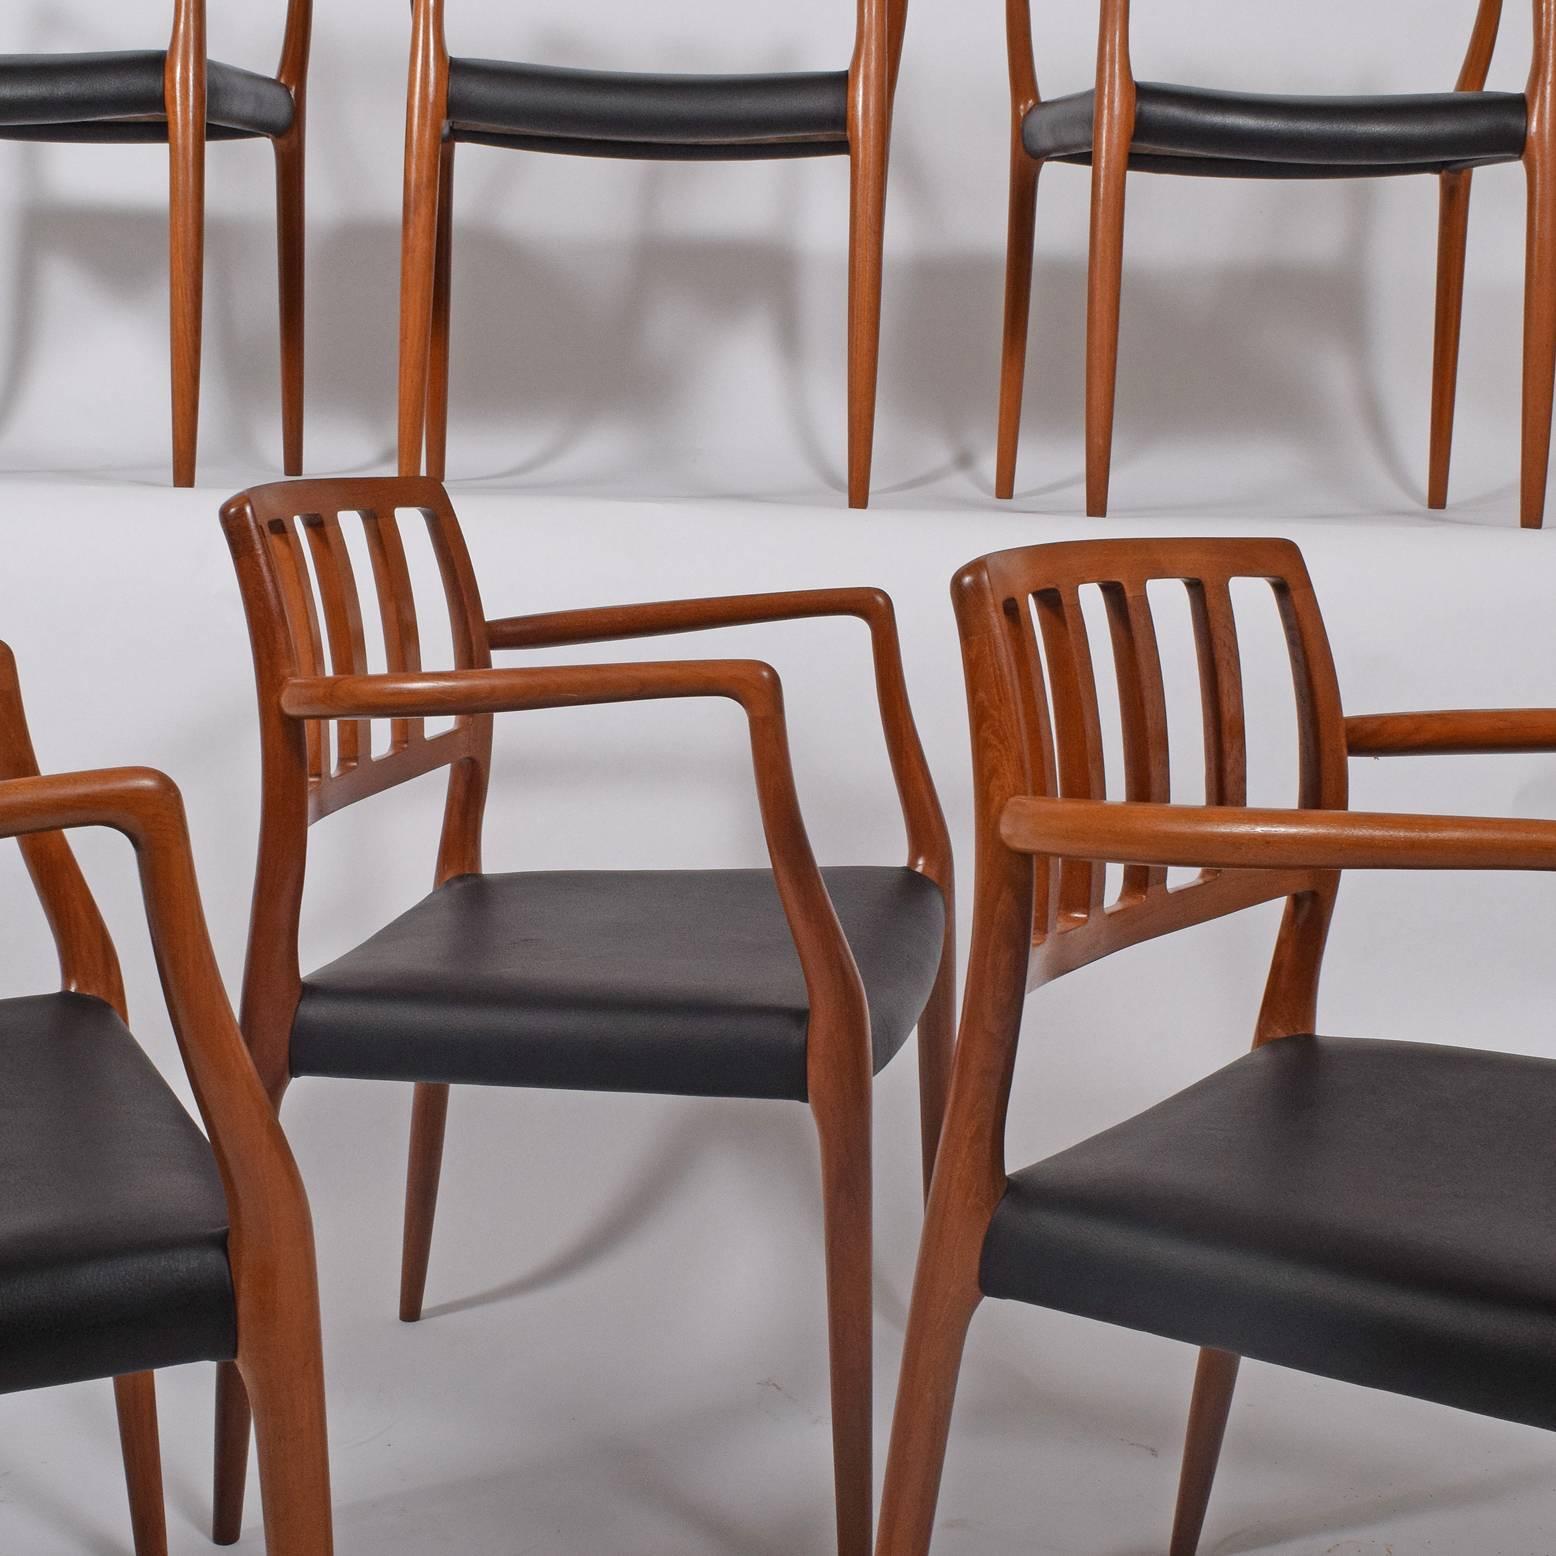 Skulpturale Sessel aus massivem Teakholz, Design von Niels O. Møller, schwarze Lederpolsterung
Vom Hersteller signiert. Hergestellt von J.L. Moller Mobelfabrik. Modell Nr. 66
Maße: Armhöhe 27,75